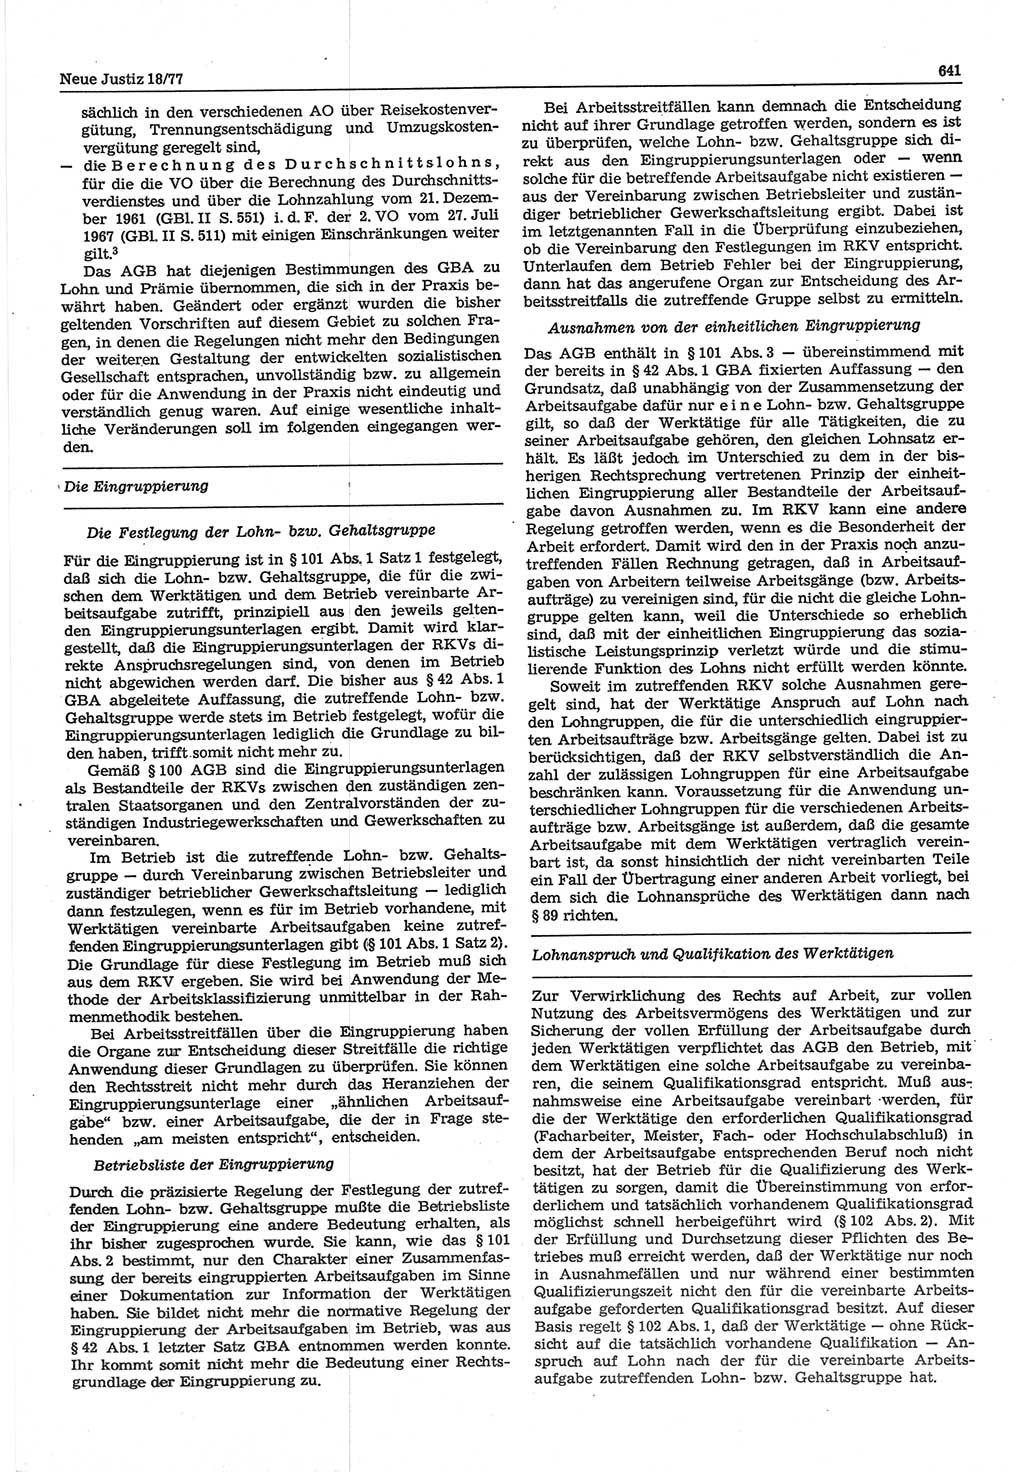 Neue Justiz (NJ), Zeitschrift für Recht und Rechtswissenschaft-Zeitschrift, sozialistisches Recht und Gesetzlichkeit, 31. Jahrgang 1977, Seite 641 (NJ DDR 1977, S. 641)